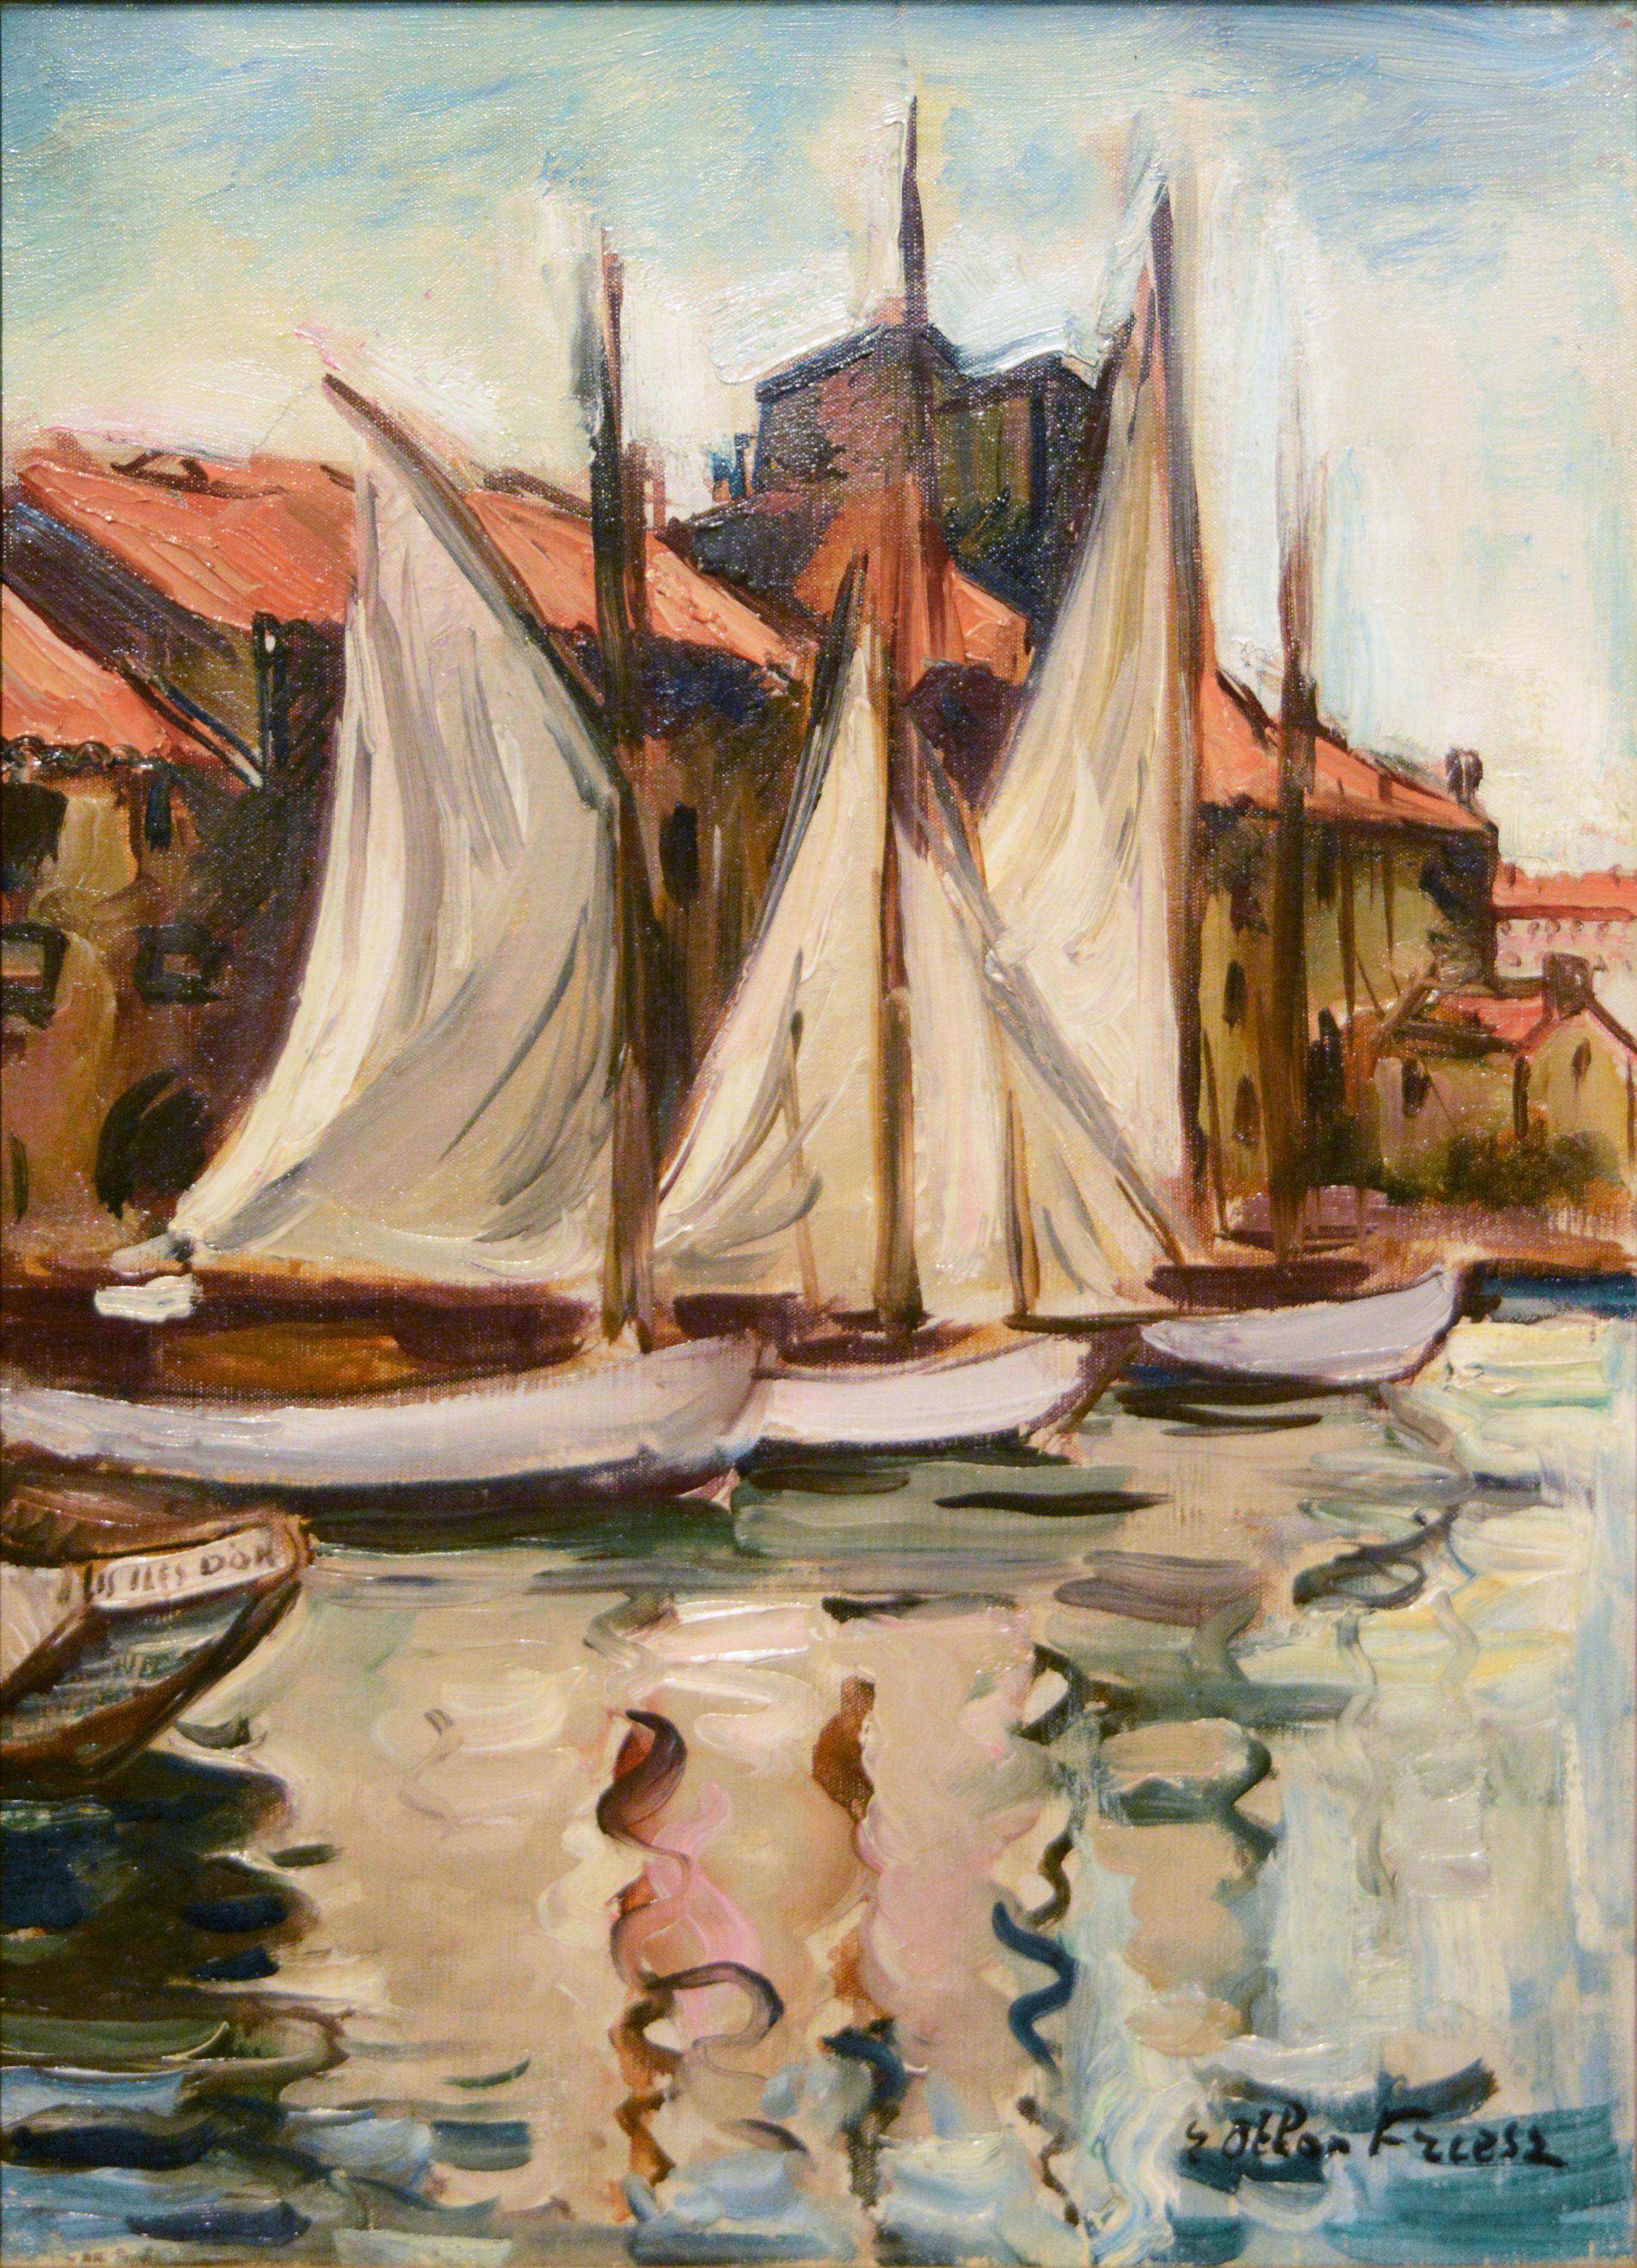 Achille-Émile Othon Friesz Landscape Painting - Fauv Impressionist harbor scene, "Sailboats at the Quai du Parti, Toulon"